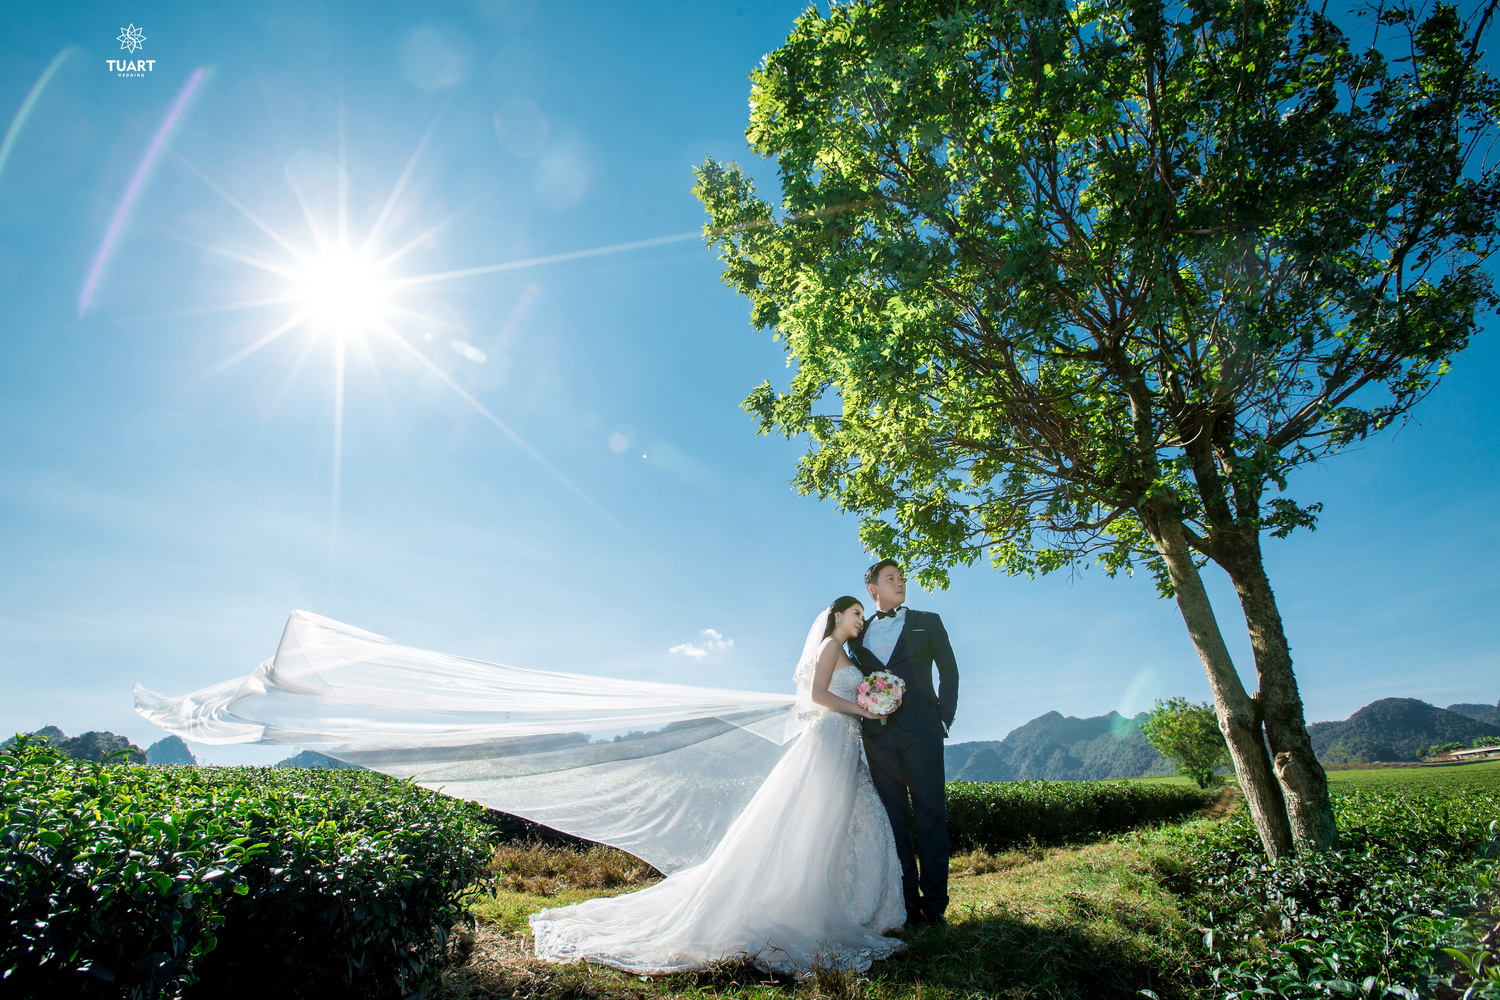 Album chụp ảnh cưới đẹp tại Mộc Châu: Đức-Lan 3